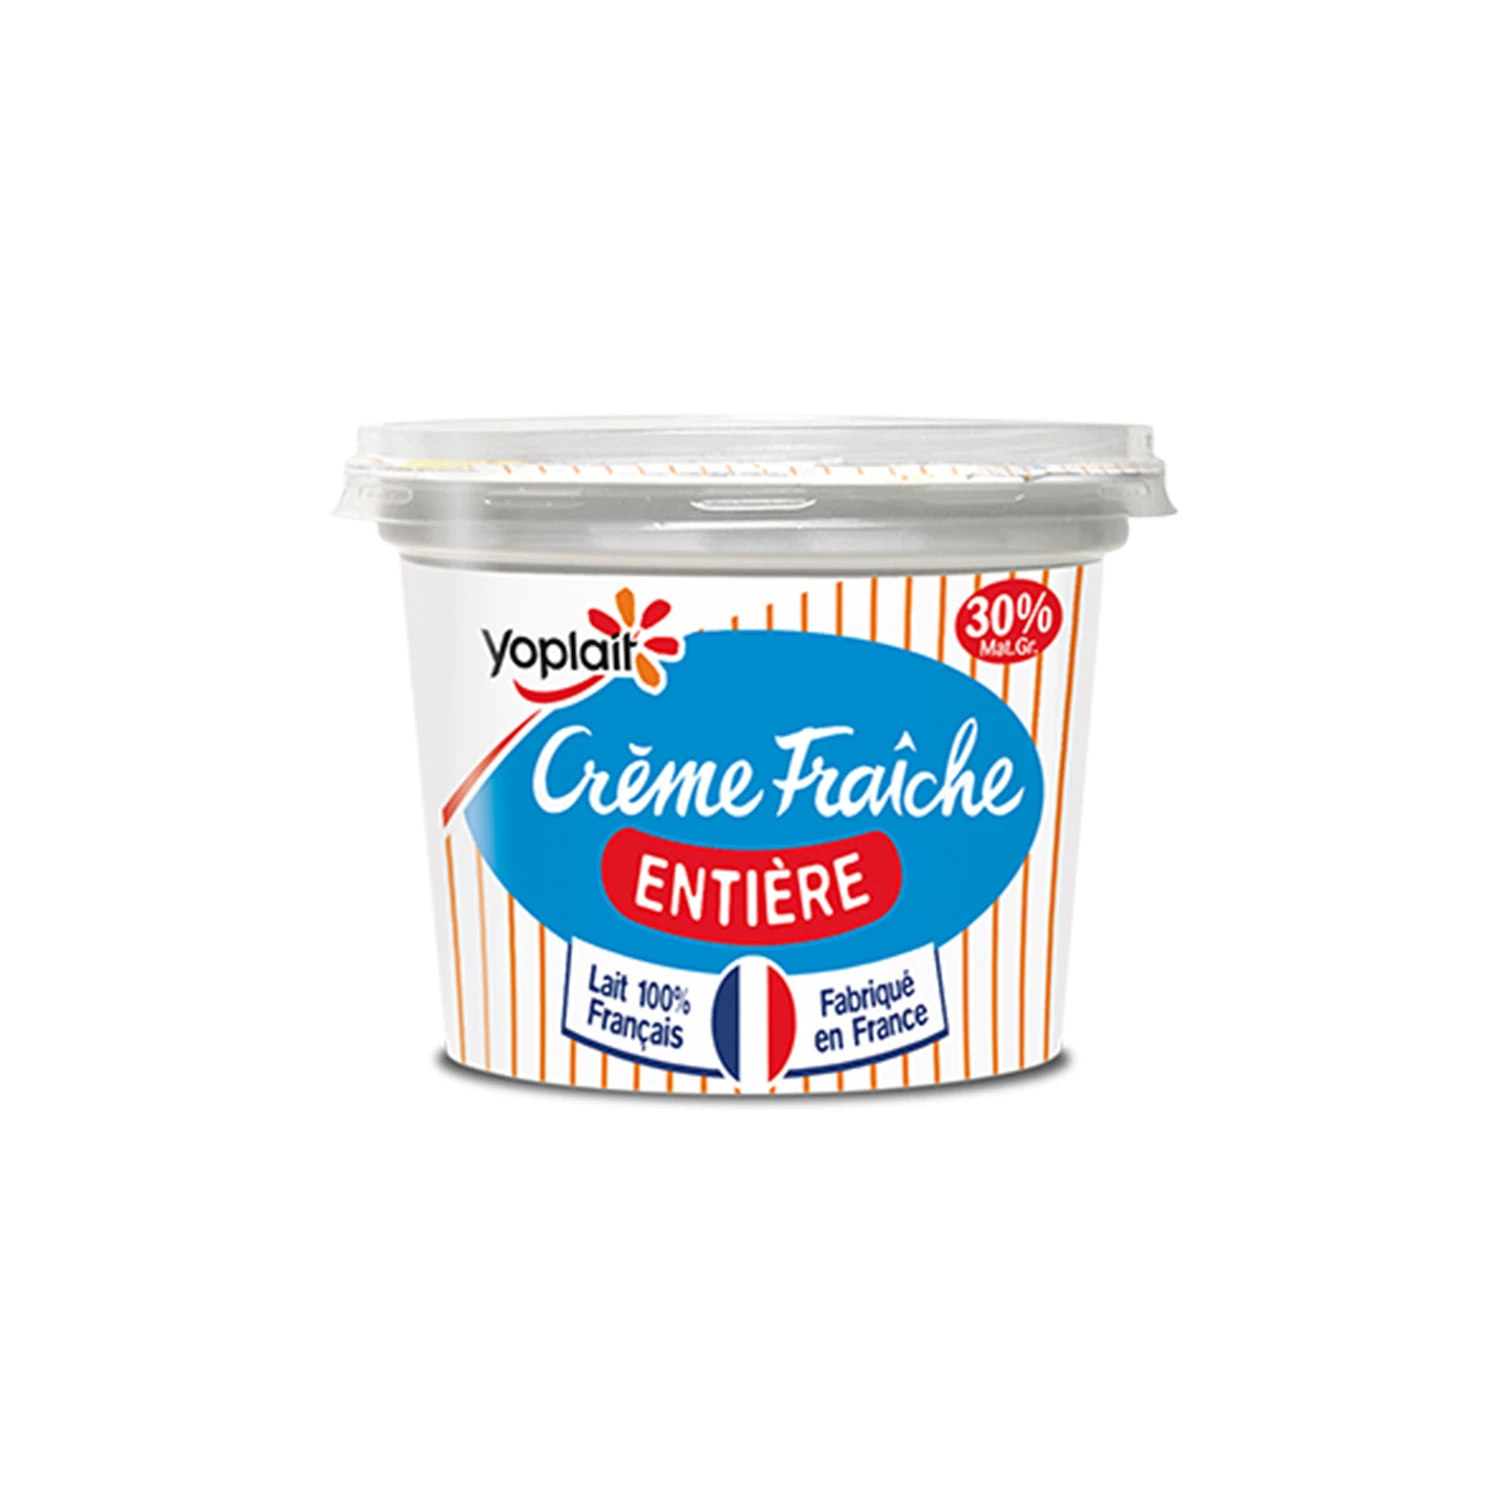 Crème Fraîche Épaisse 30190g